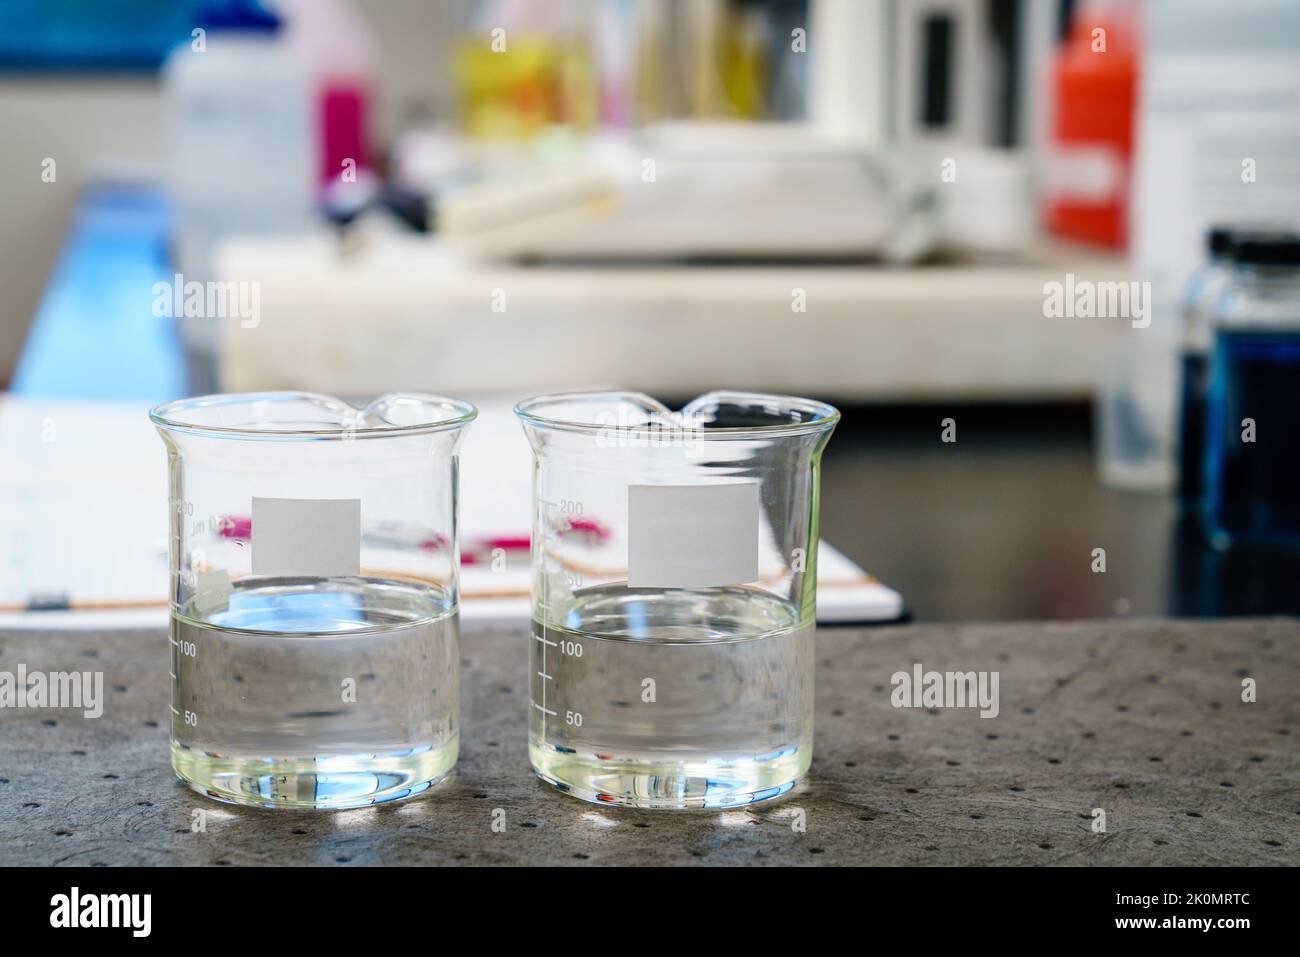 Dos vasos de precipitados con líquidos claros y etiquetas en blanco en una almohadilla de laboratorio Foto de stock